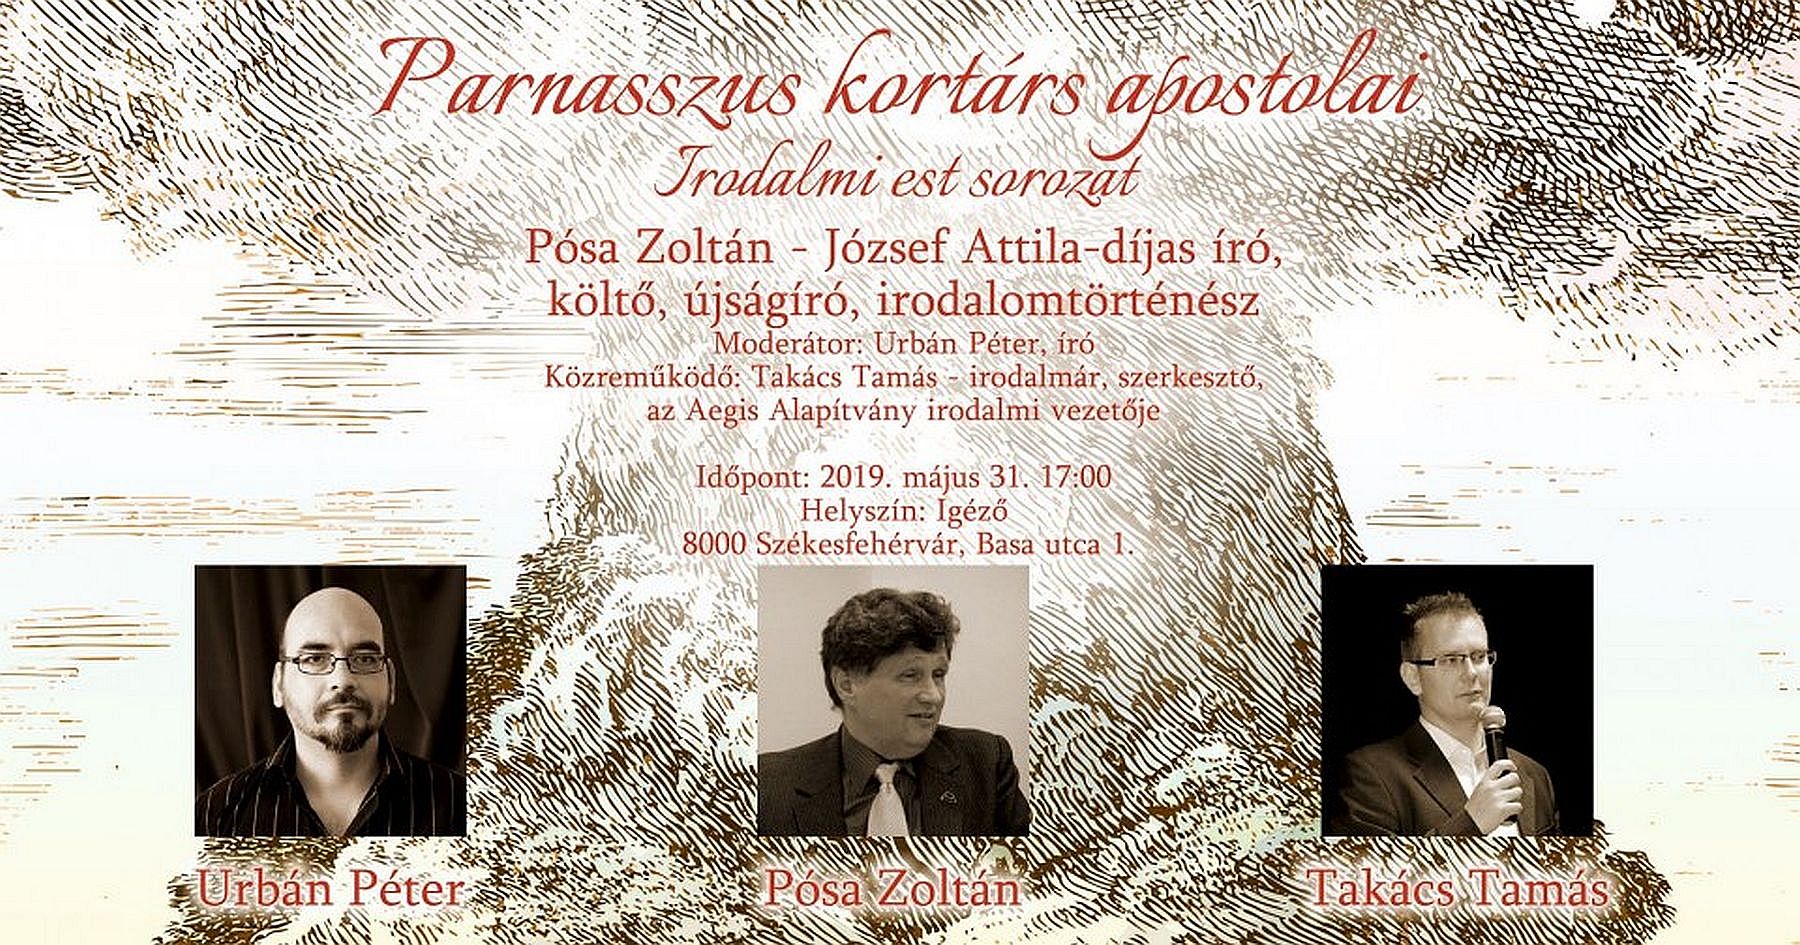 Pósa Zoltán lesz a „Parnasszus kortárs apostolai” irodalmi estek vendége